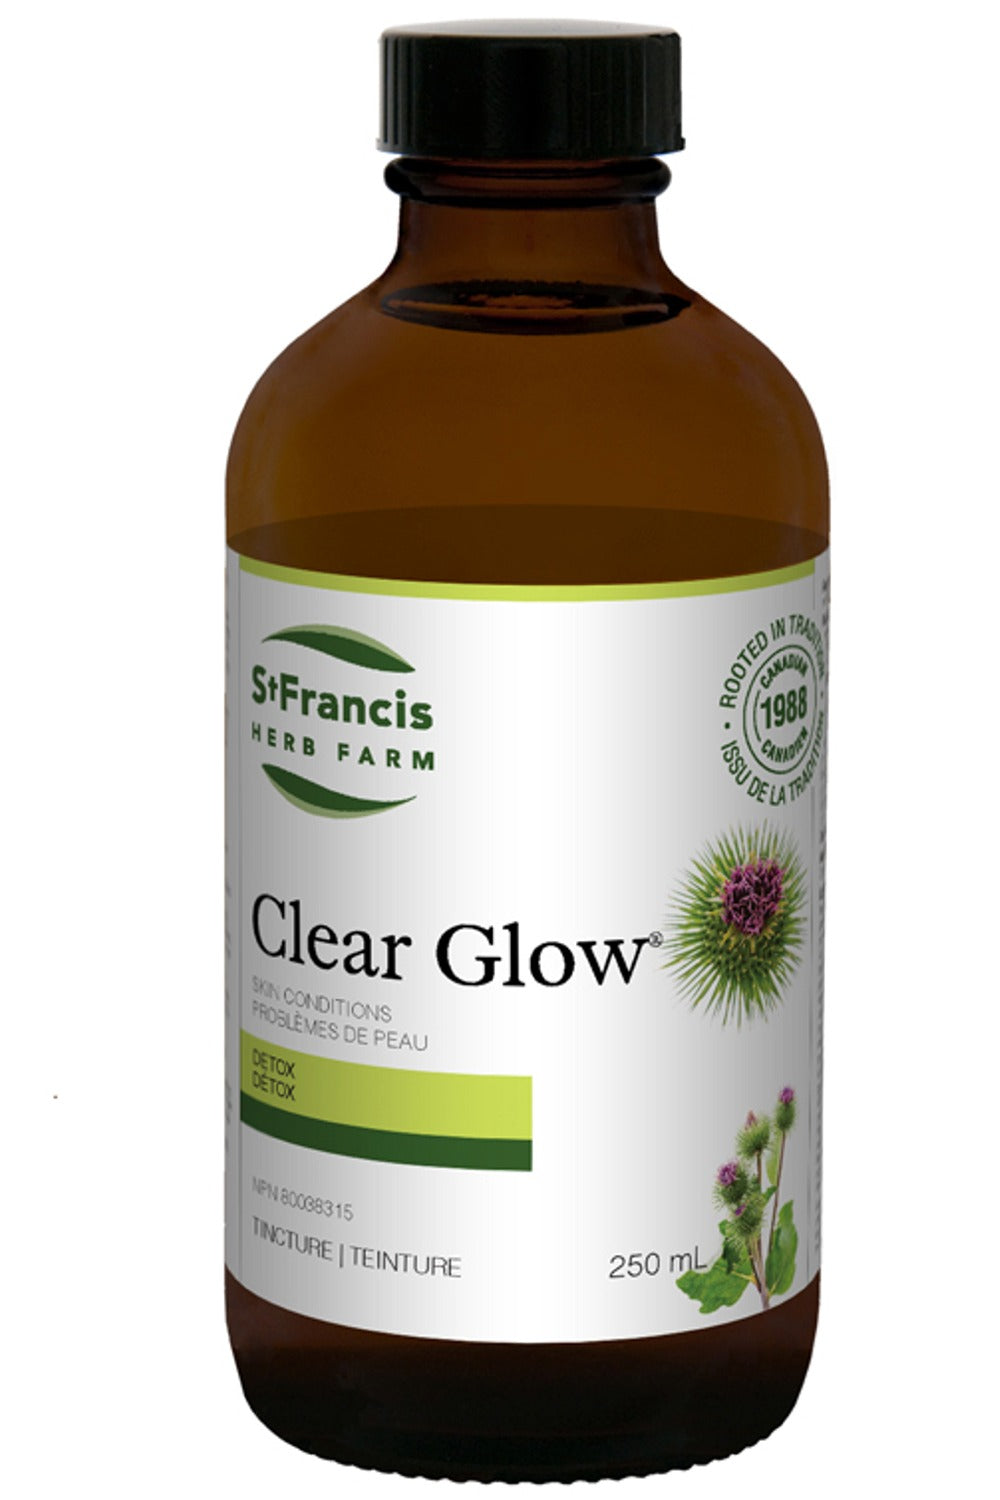 ST FRANCIS HERB FARM Clear Glow (250 ml)